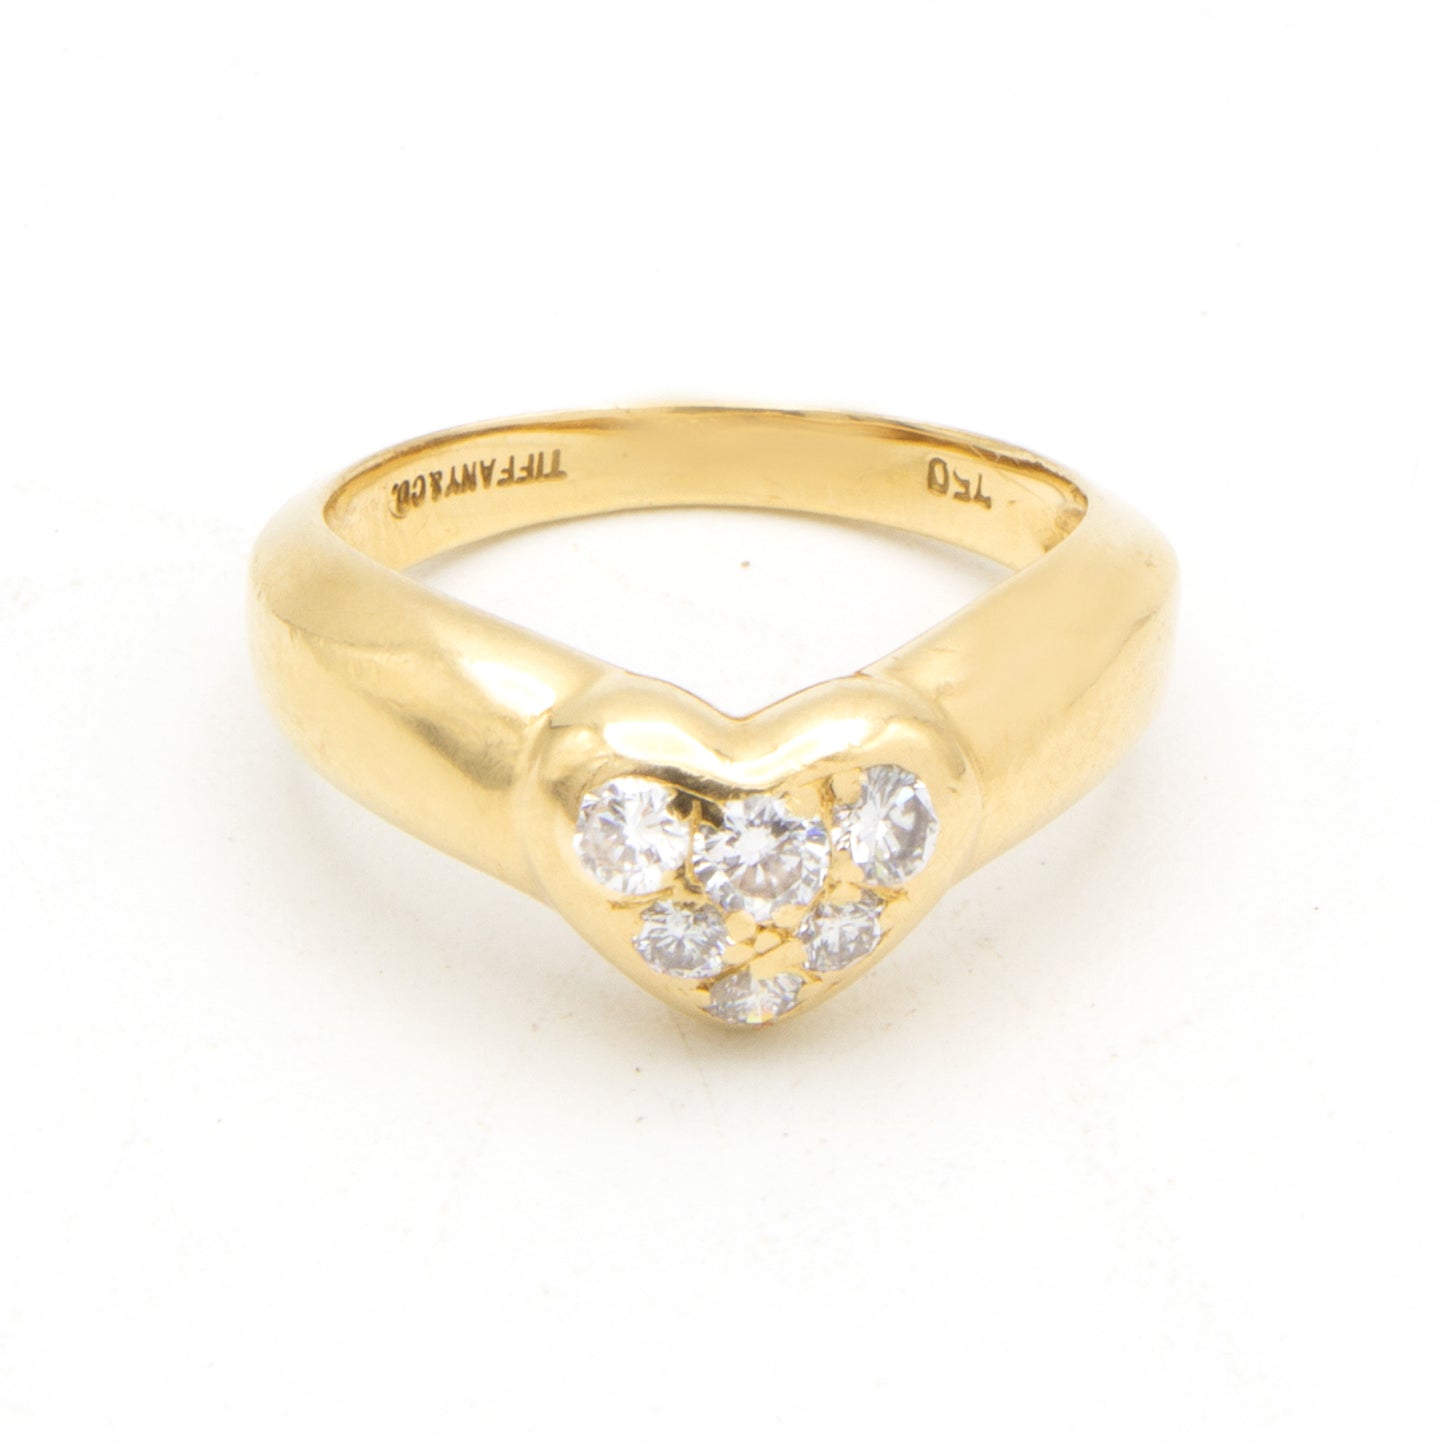 Tiffany & Co "Heart" 18K ring